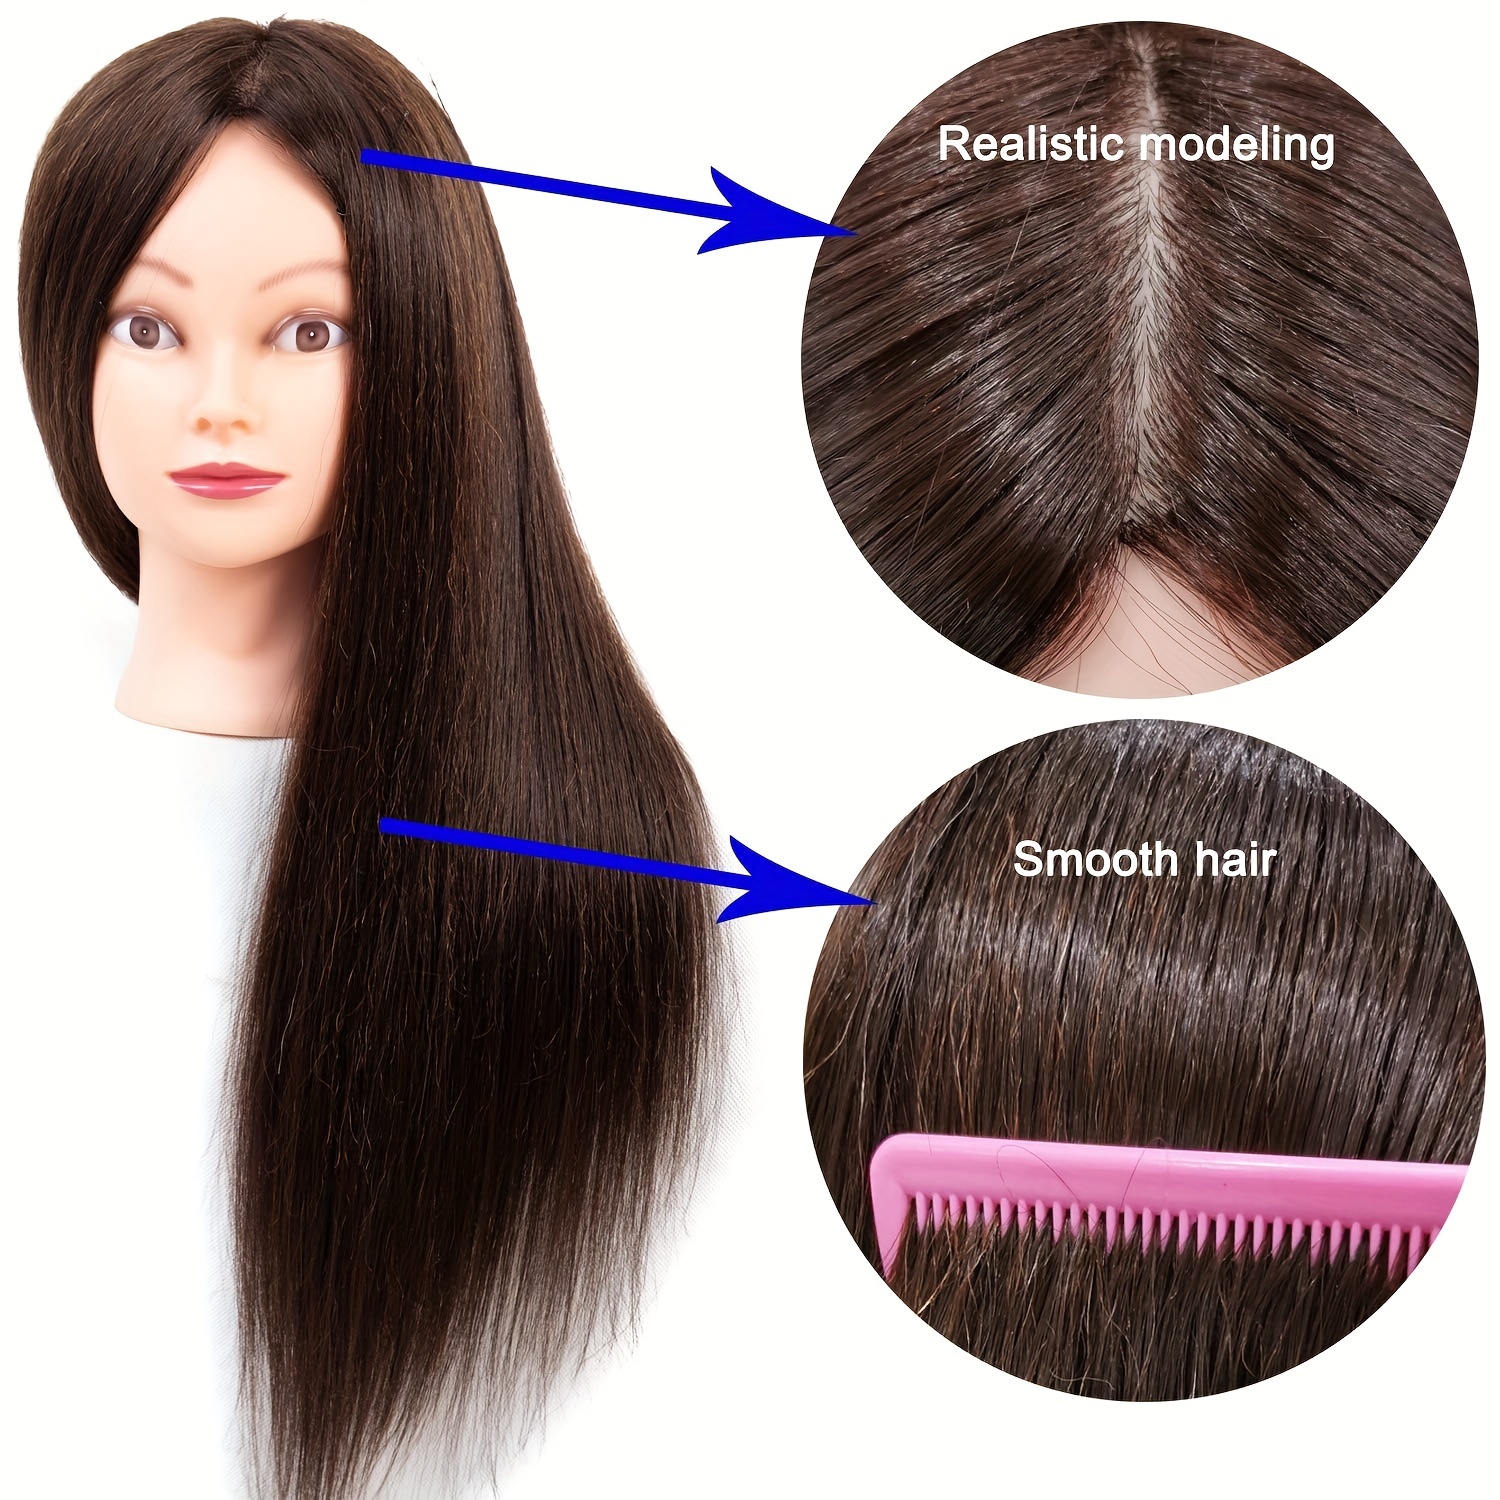 Cabeça de manequim para estilização de cabelo com fibras, cabelo